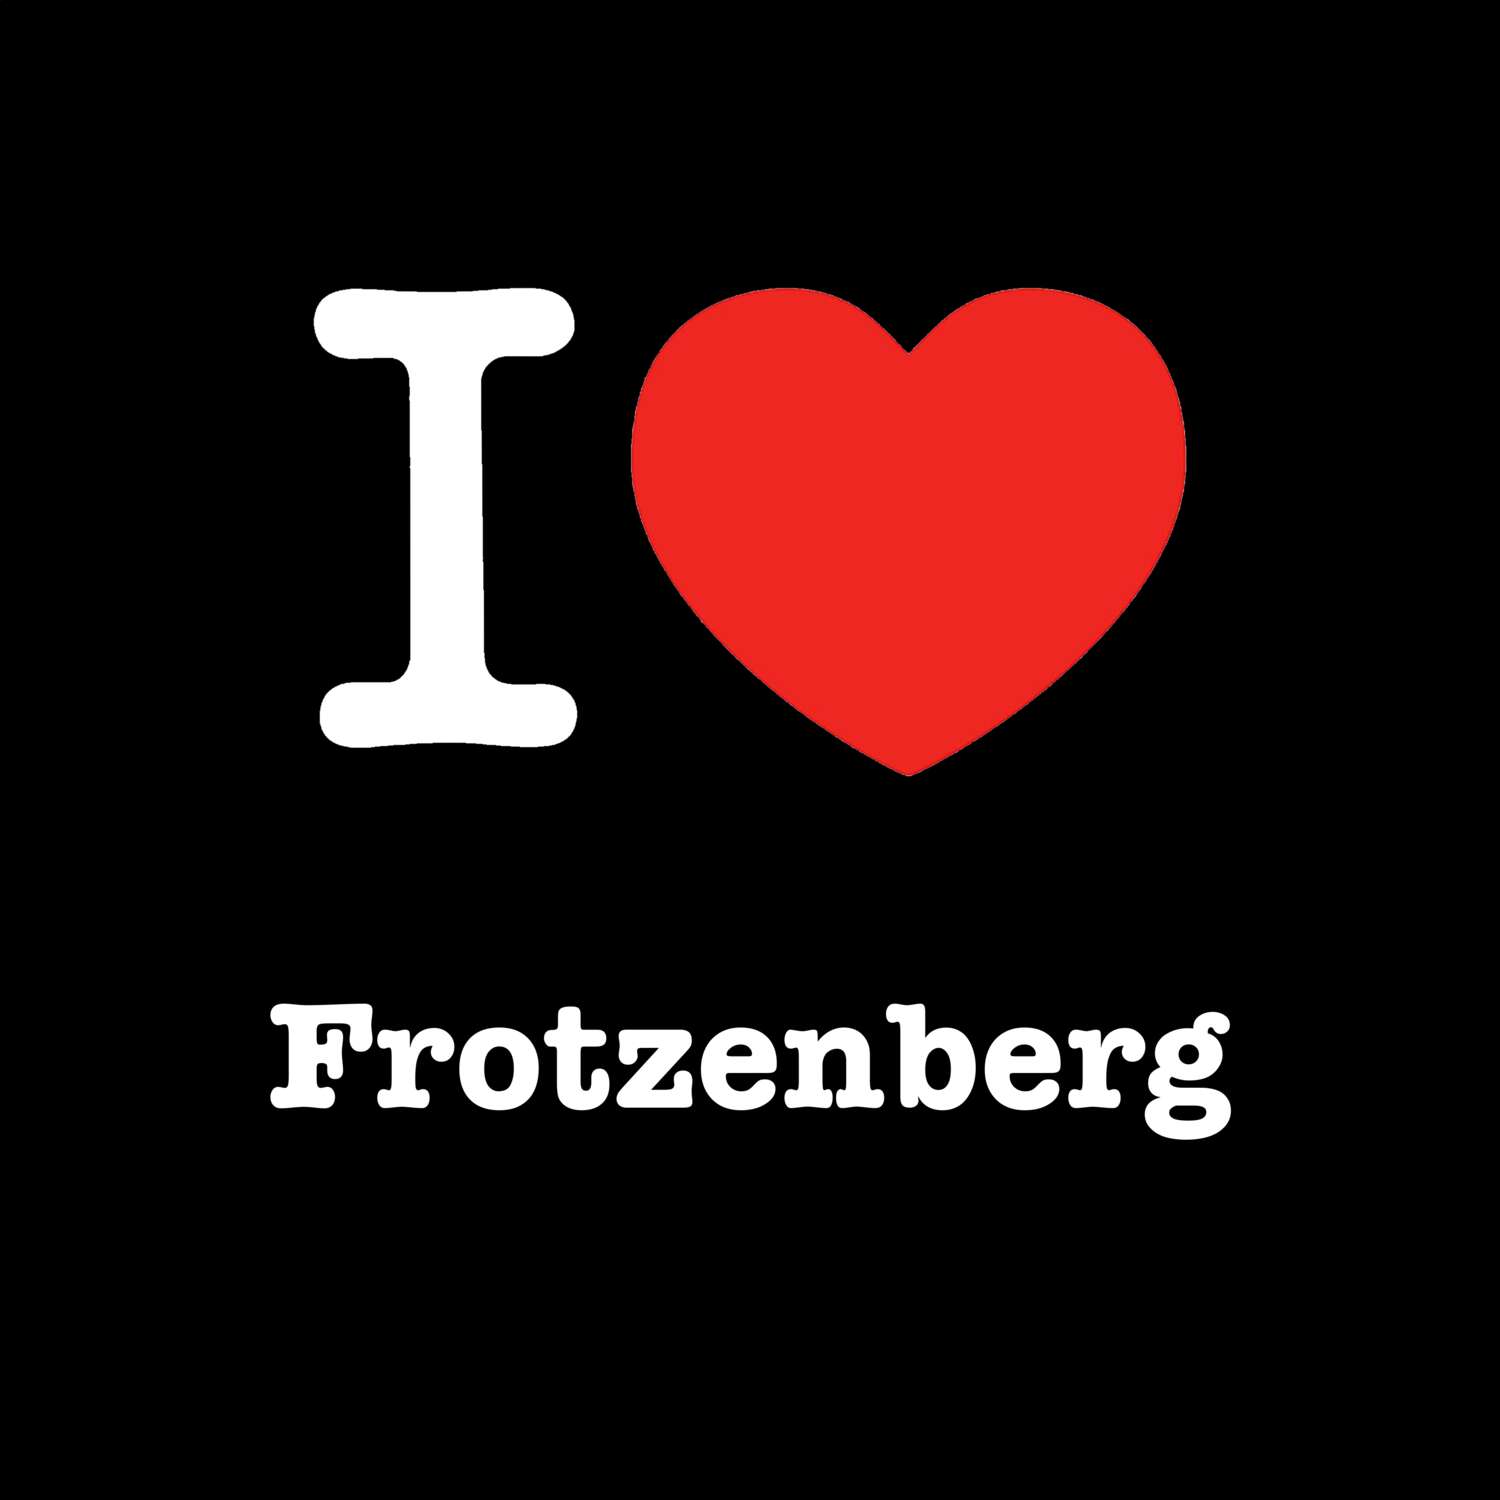 Frotzenberg T-Shirt »I love«